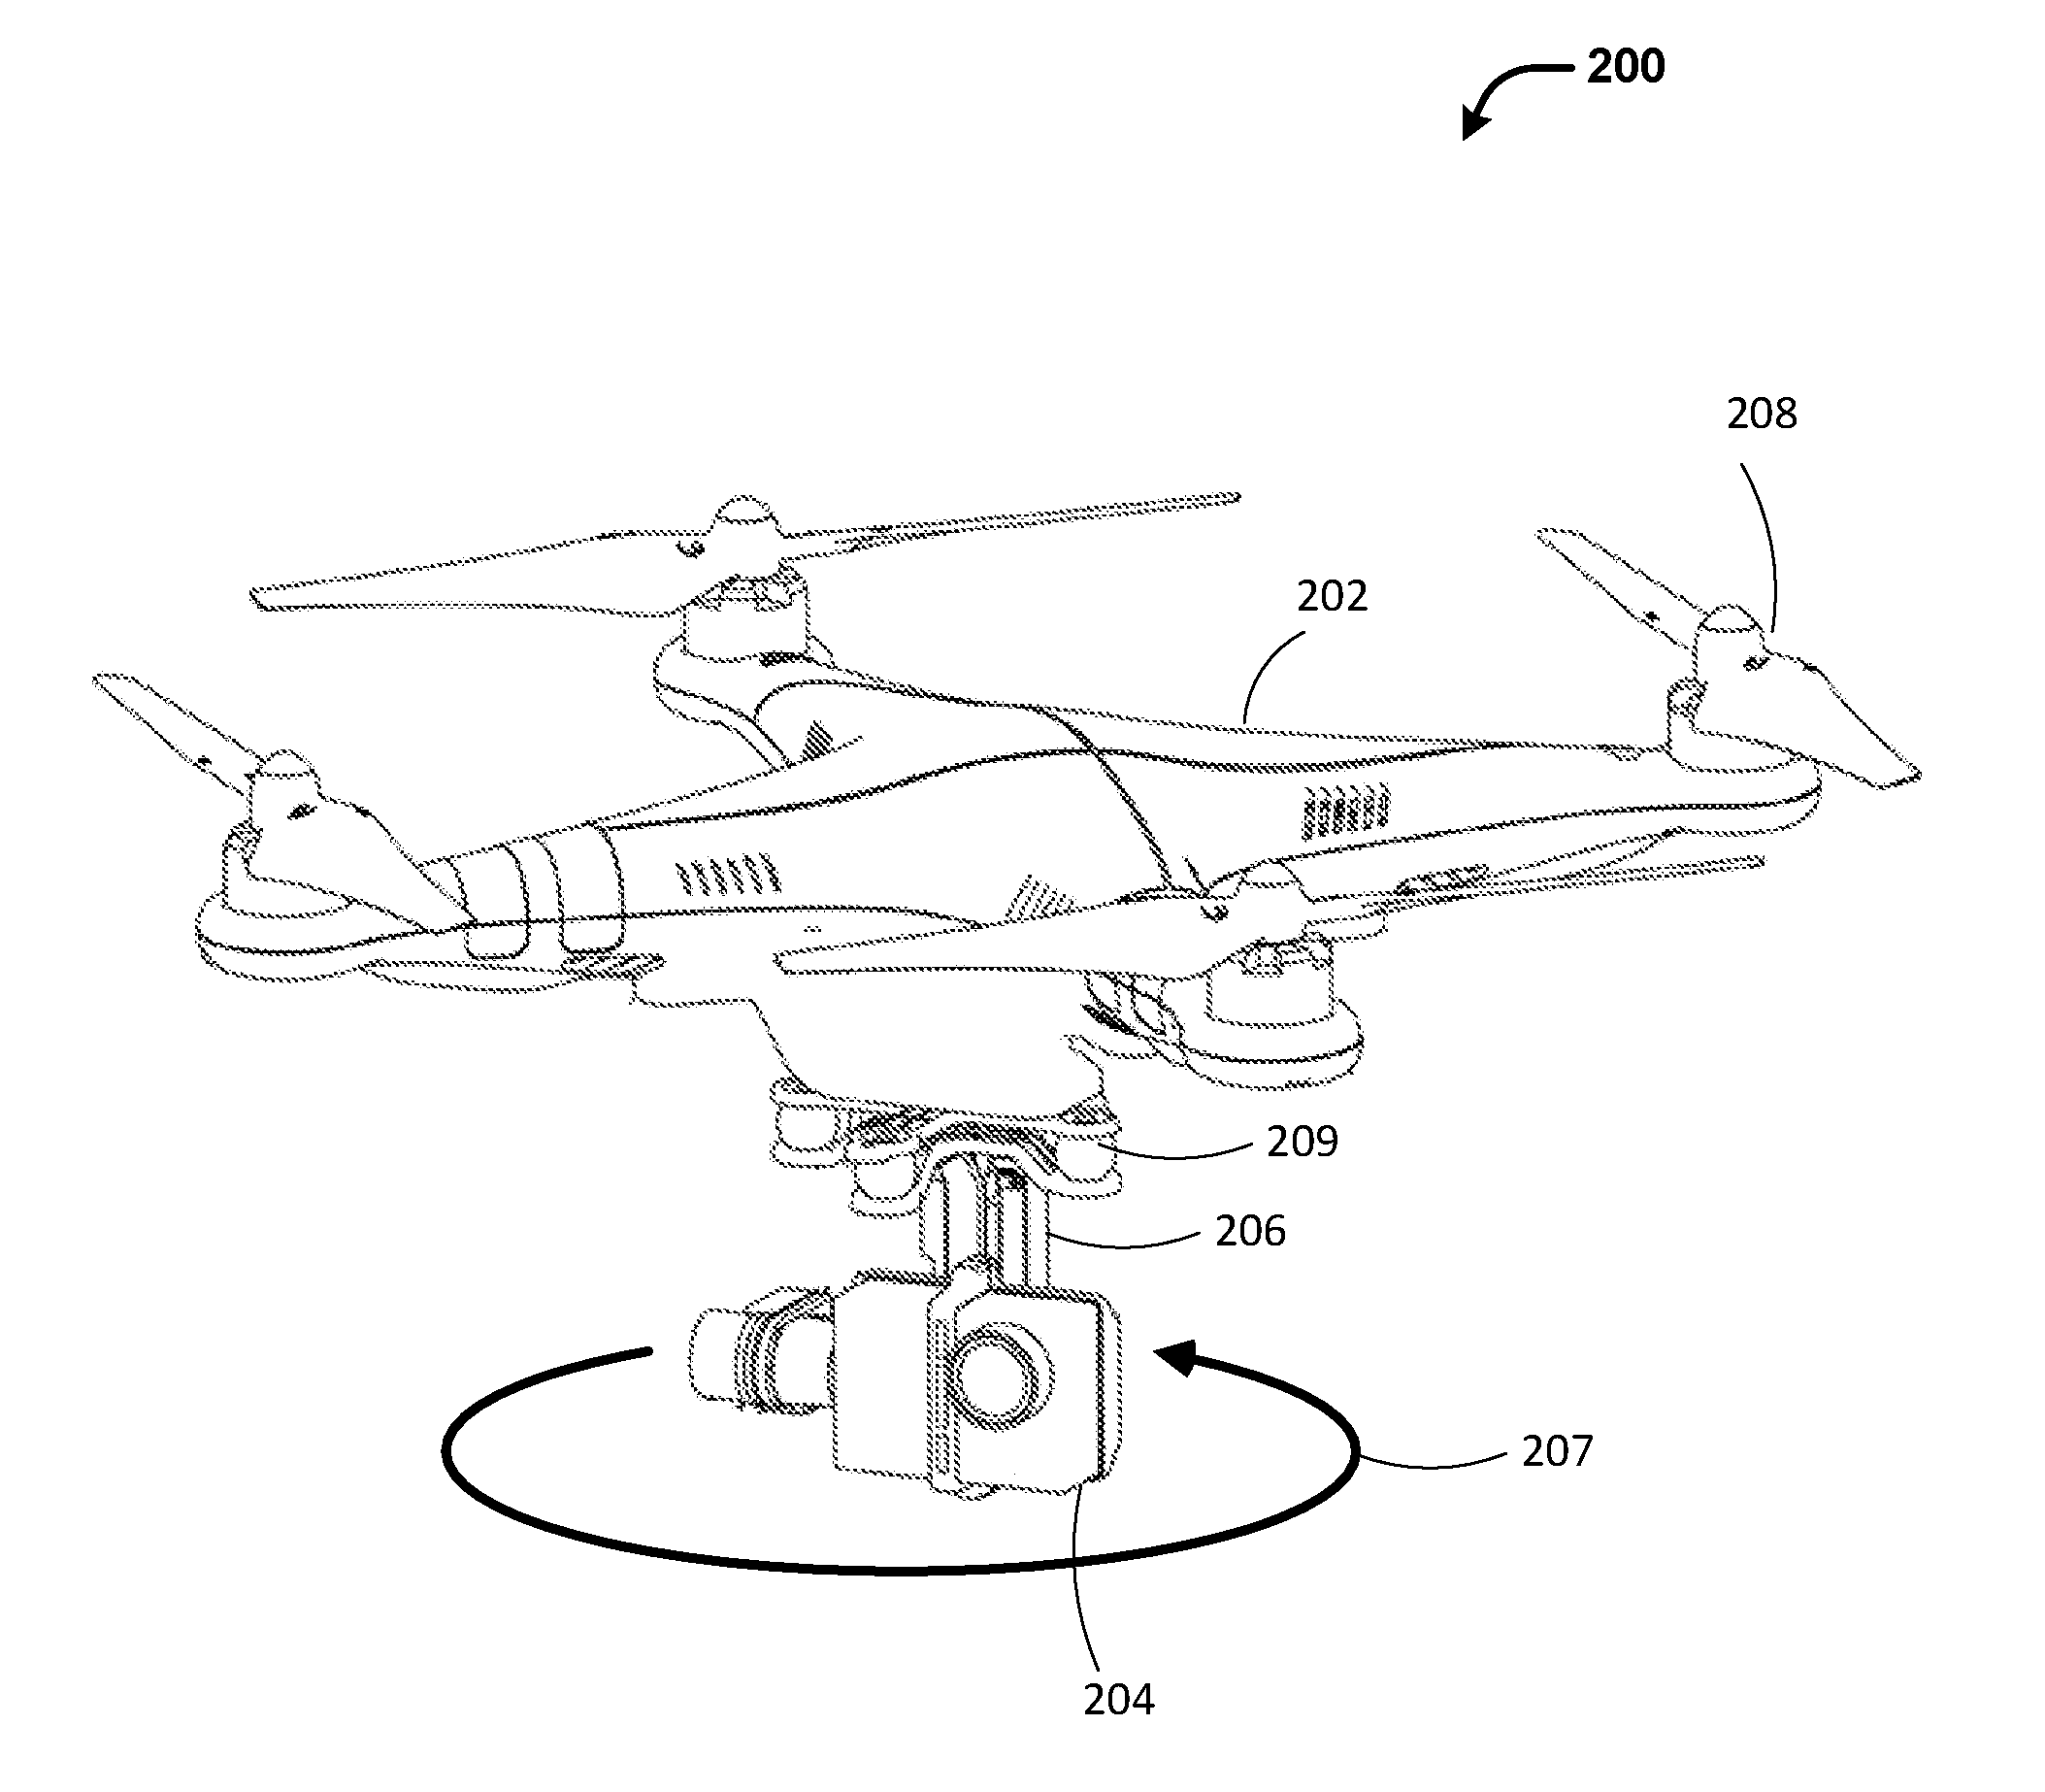 UAV panoramic imaging